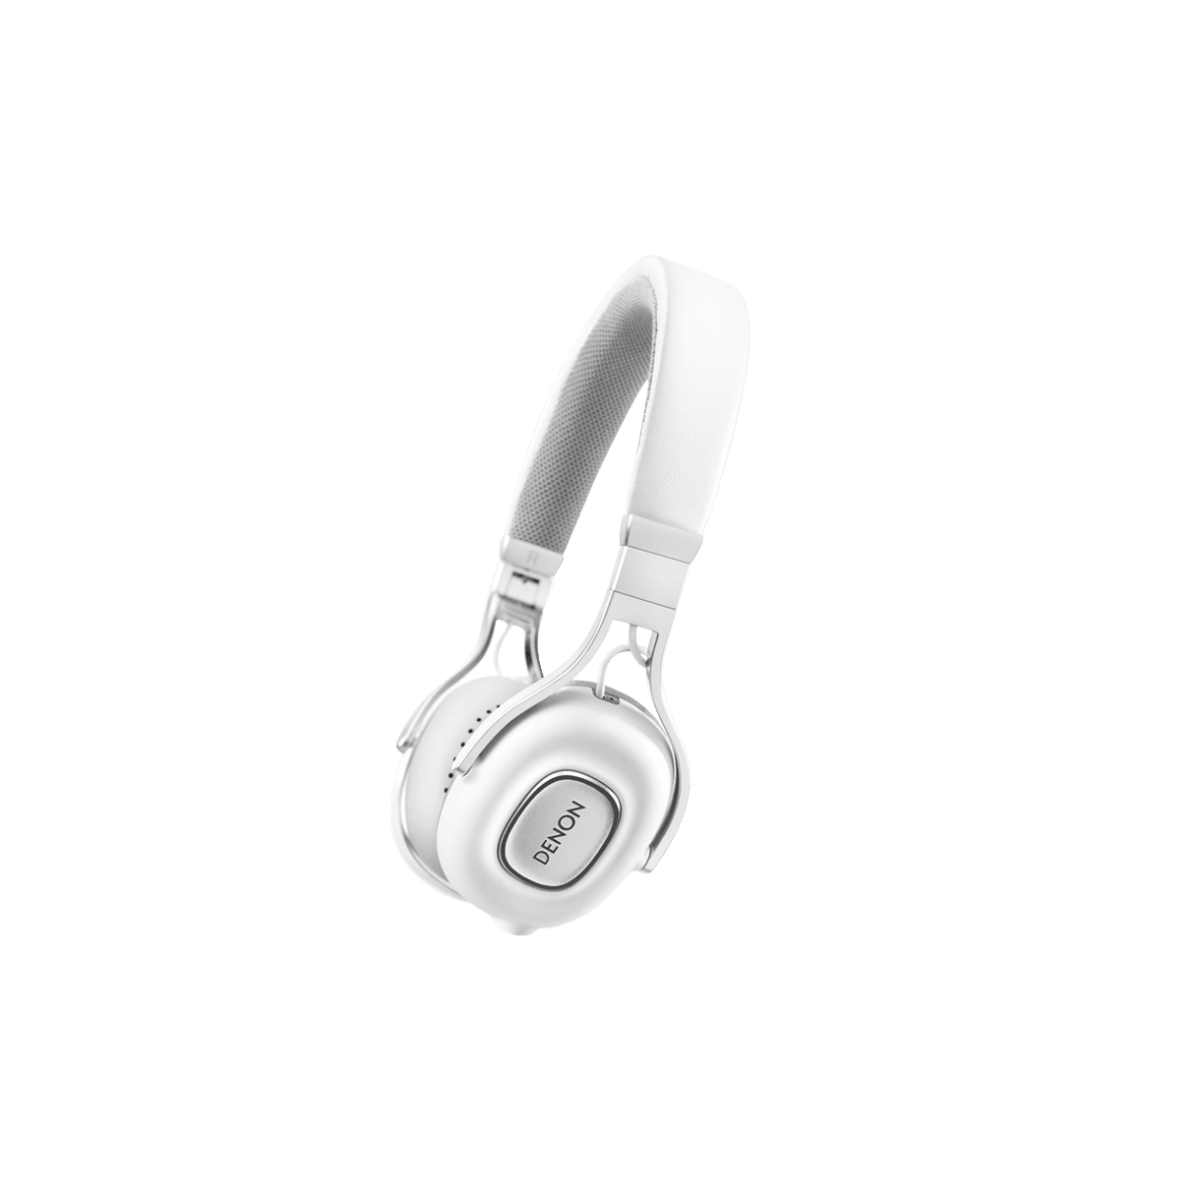 Hier sehen Sie den Artikel AH-MM200 On Ear Headphone white aus der Kategorie Supra-aural. Dieser Artikel ist erhältlich bei cebrands.ch